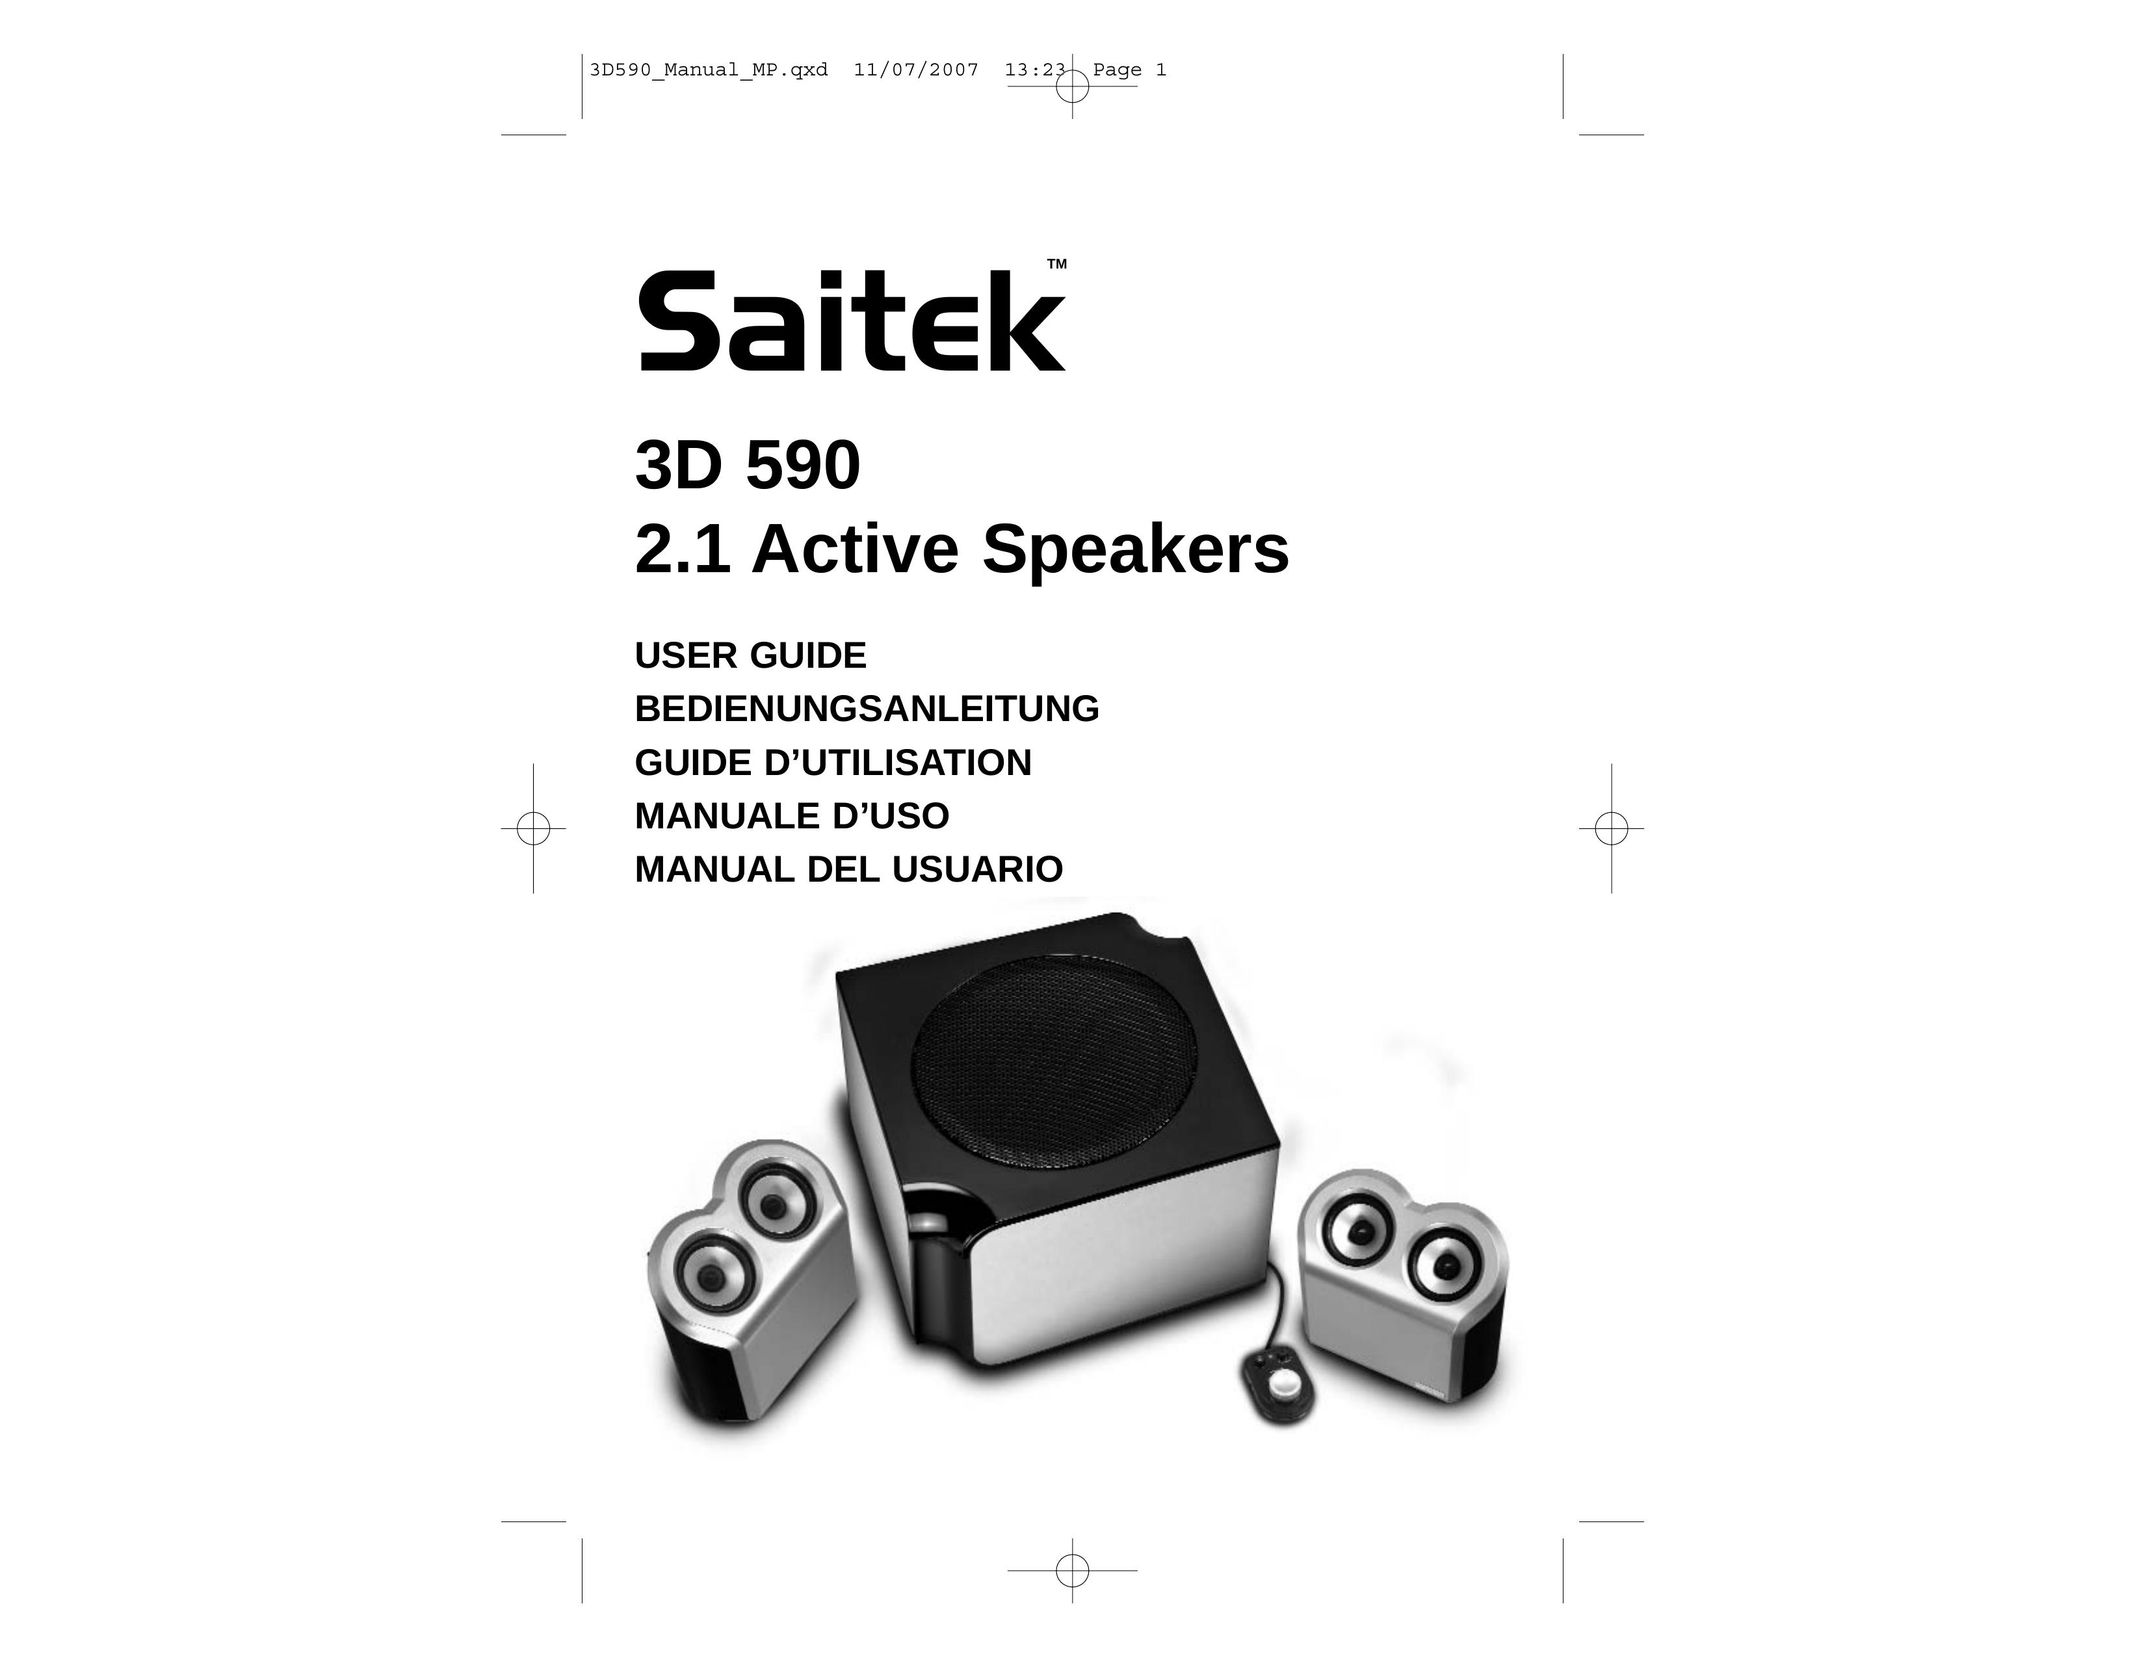 Saitek 3D 590 Speaker User Manual